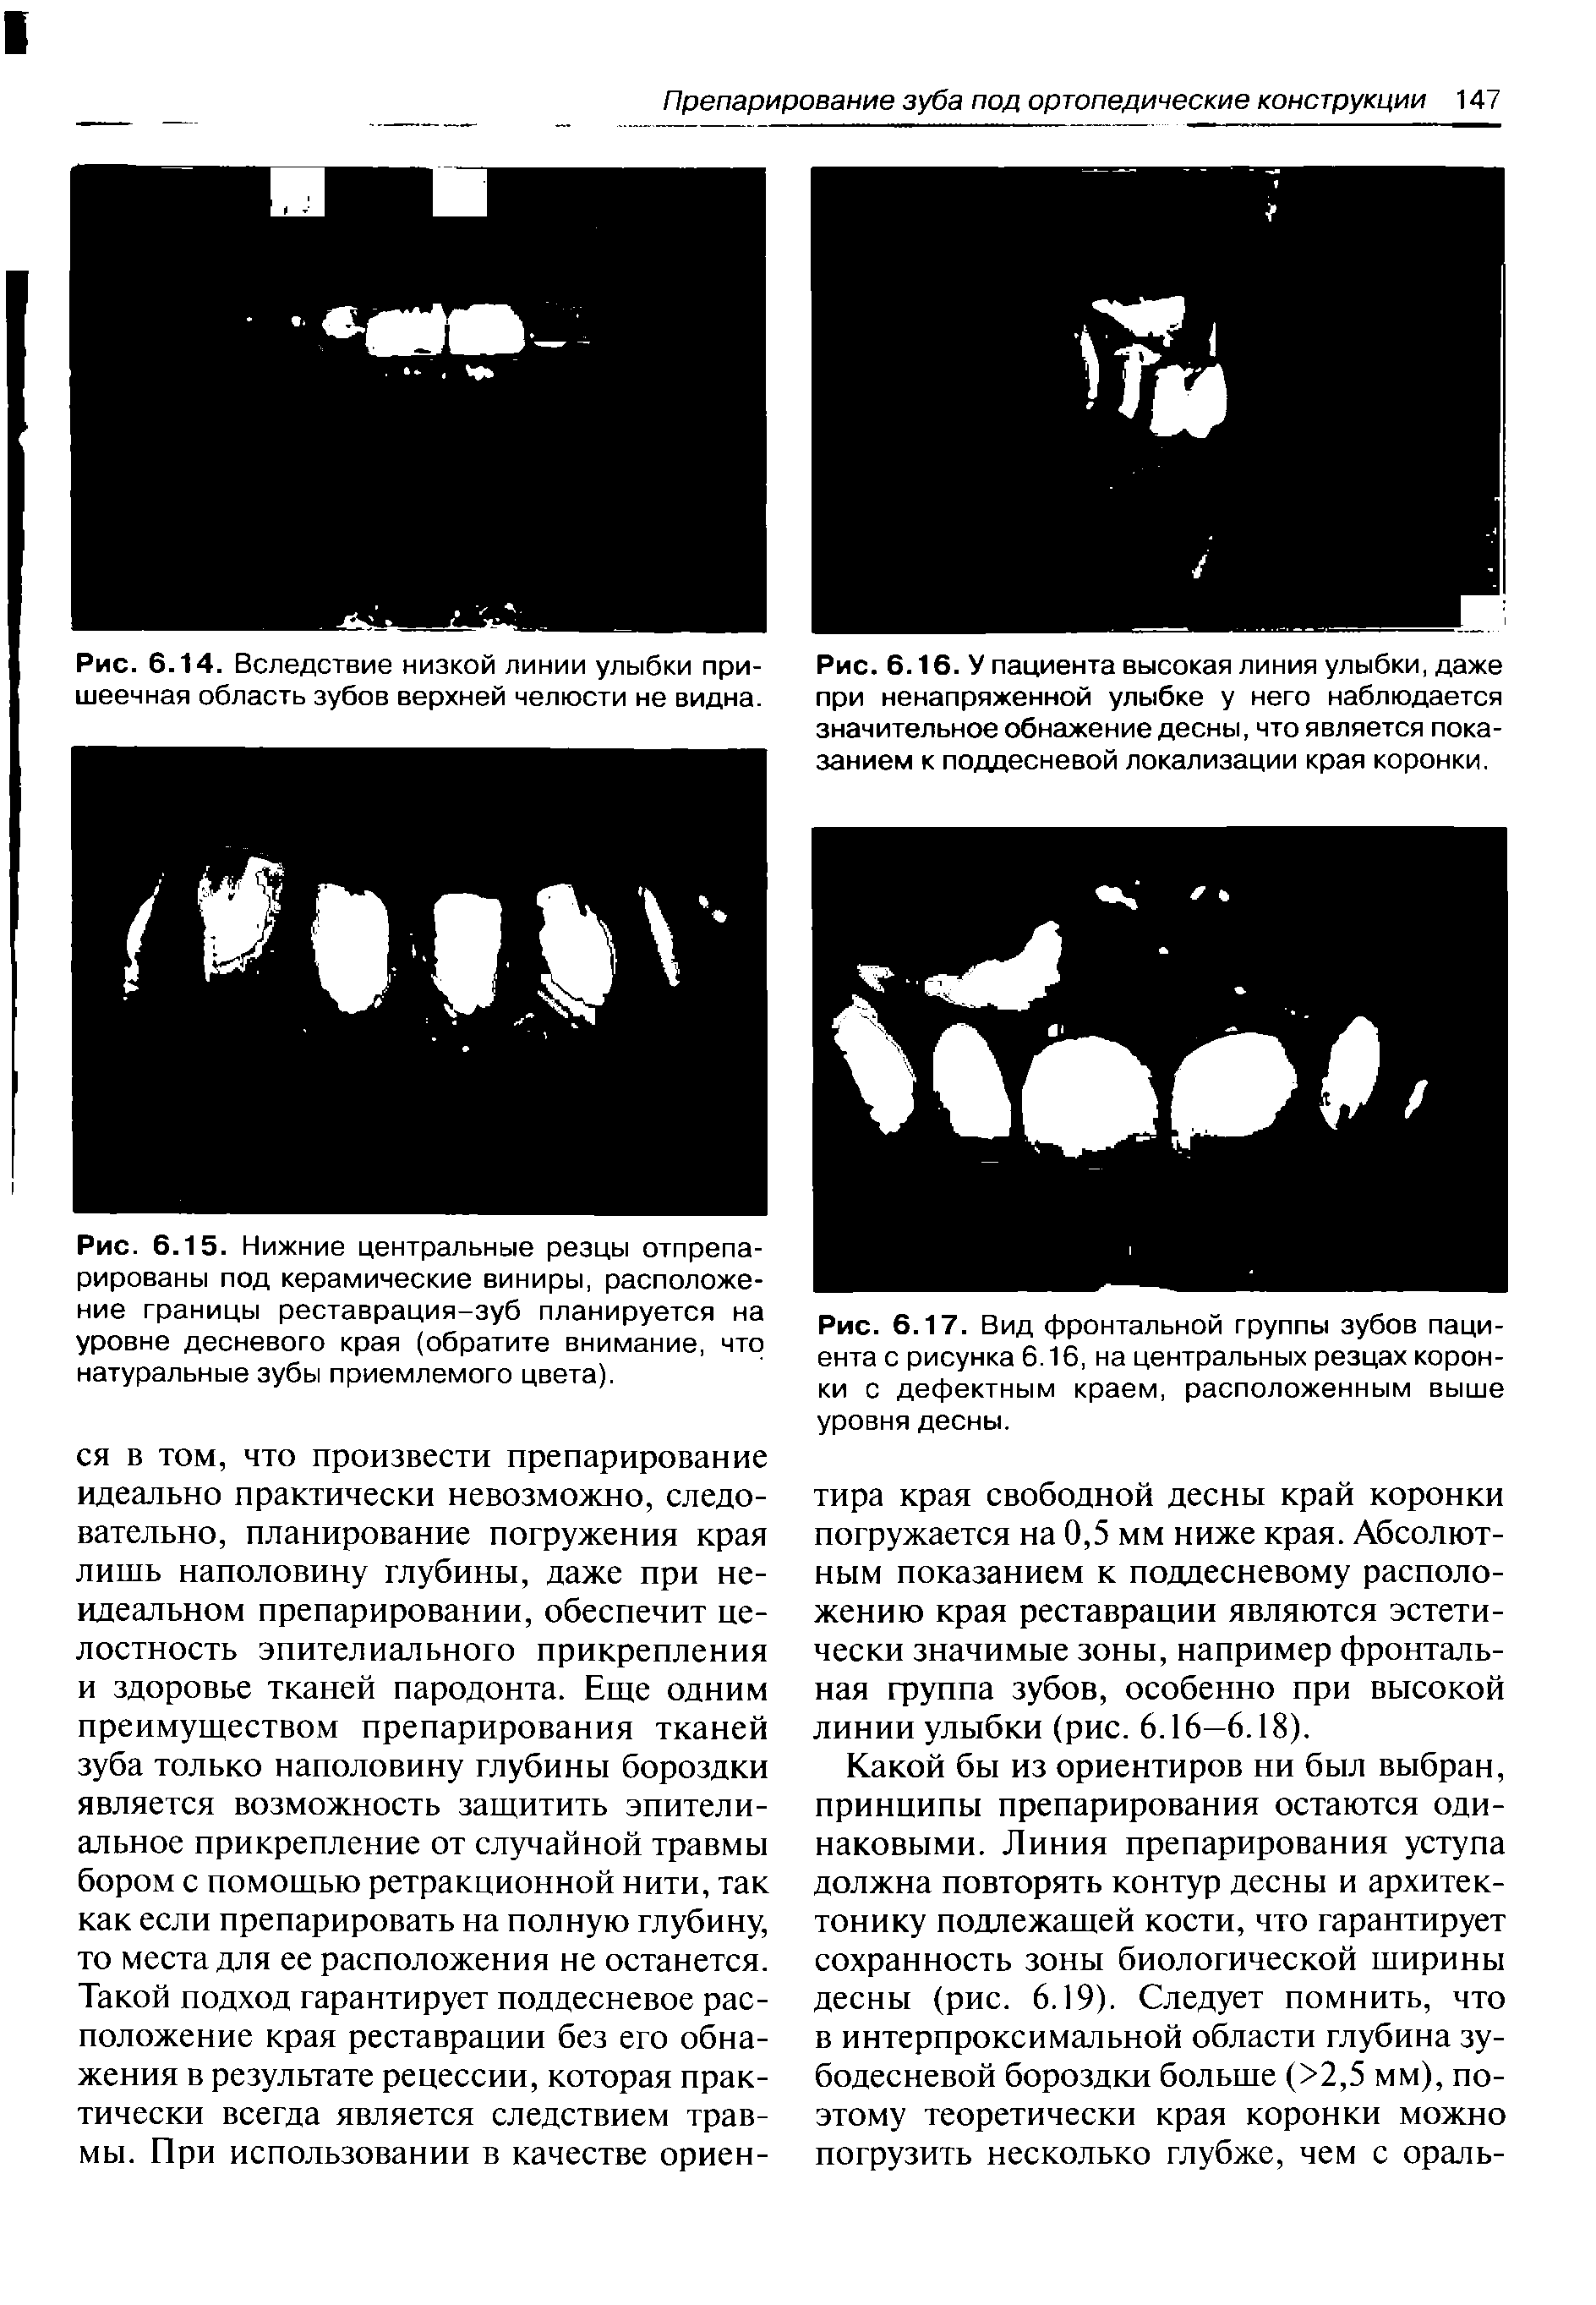 Рис. 6.17. Вид фронтальной группы зубов пациента с рисунка 6.16, на центральных резцах коронки с дефектным краем, расположенным выше уровня десны.